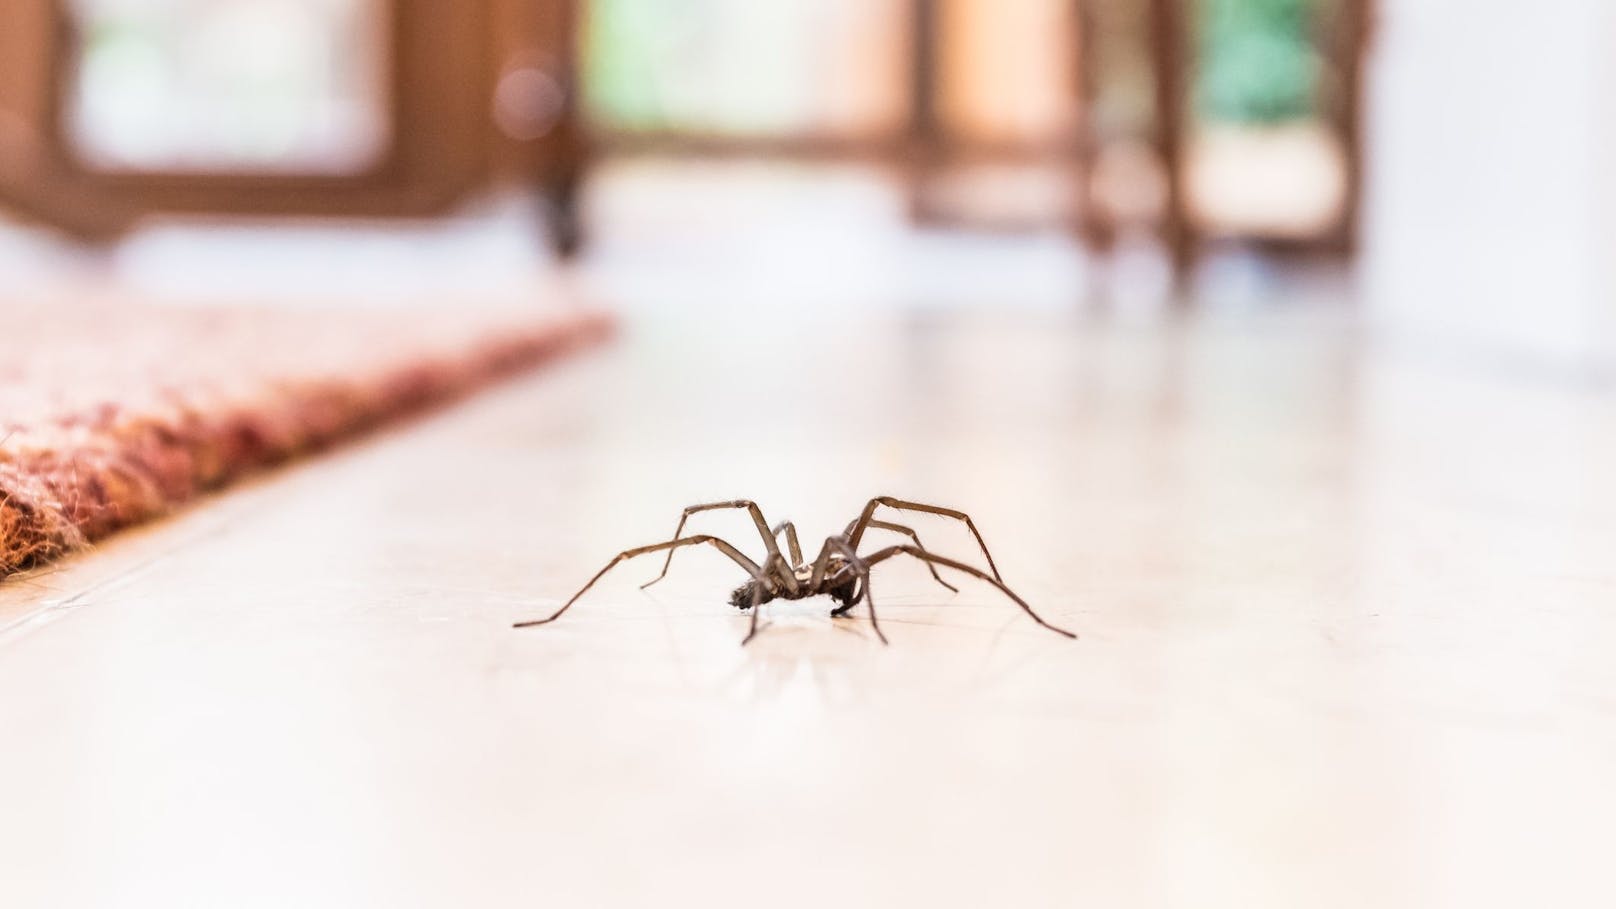 Sterben Spinnen wirklich, wenn man sie aufsaugt?